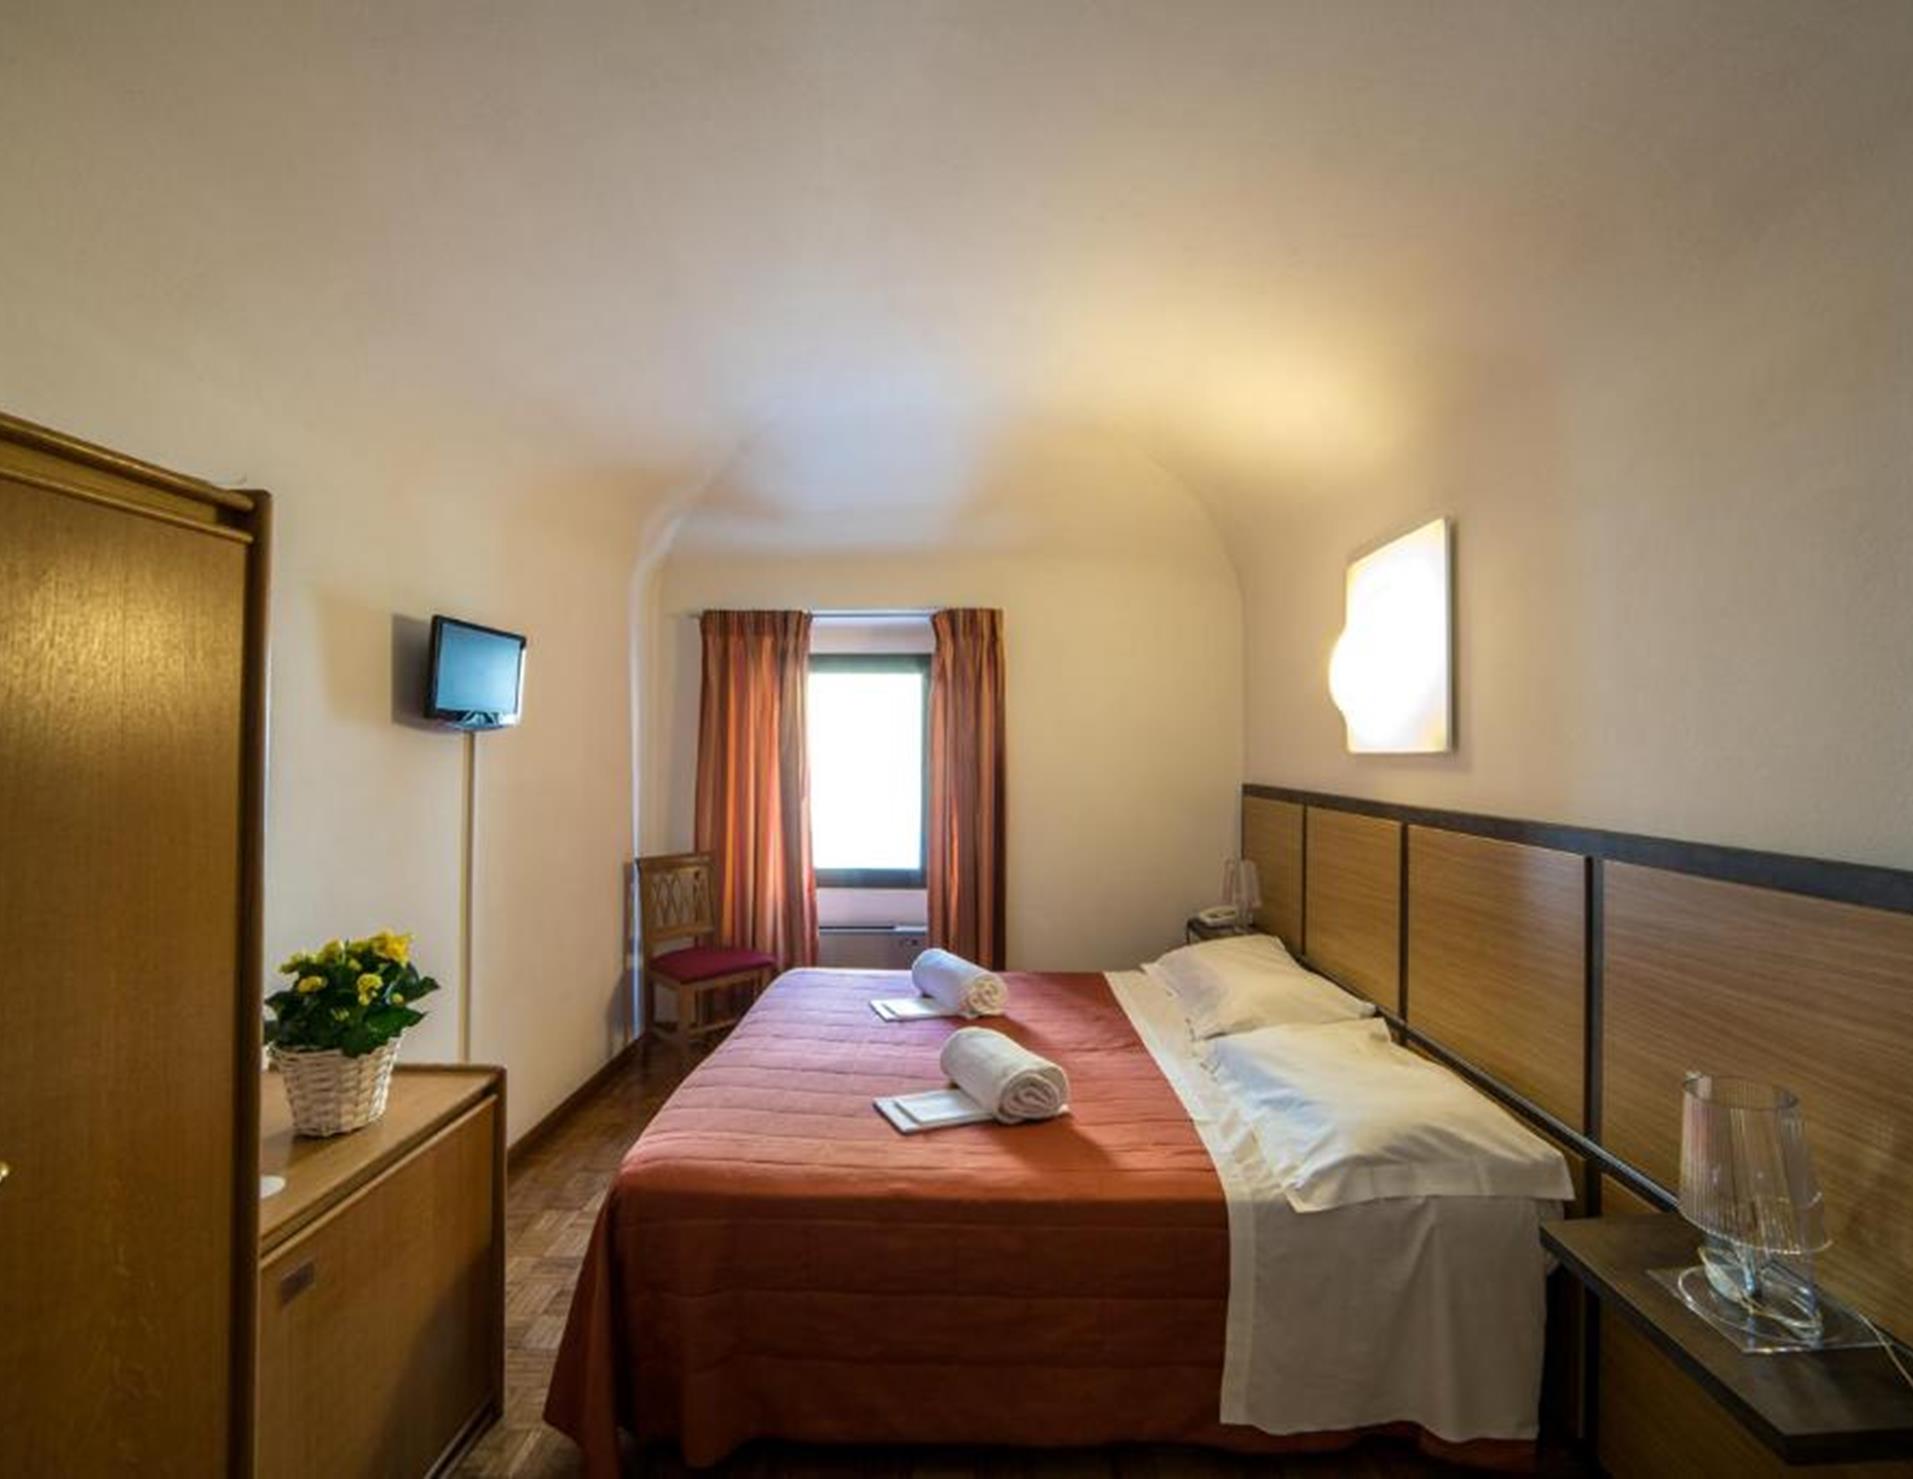 Hotel La Vecchia Cartiera - Room 8